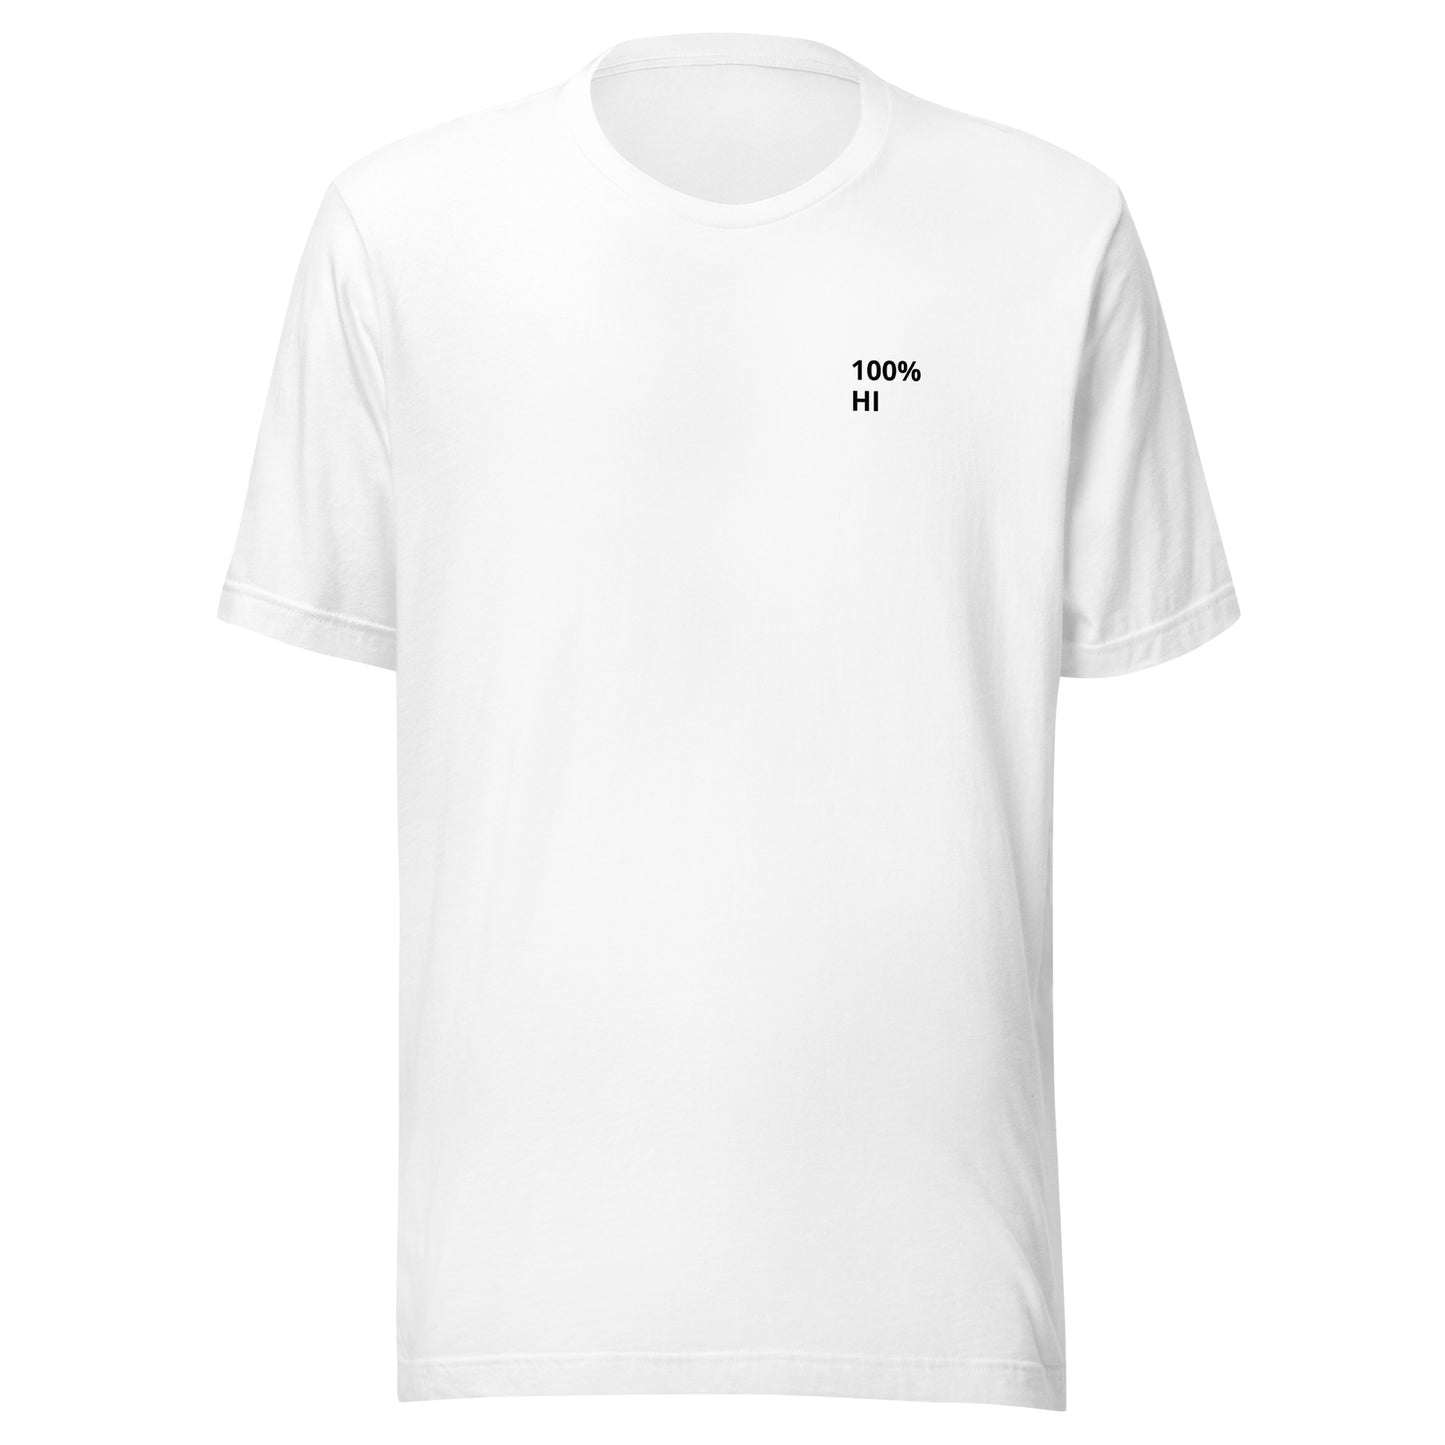 100%  HI (Human Intelligence) Unisex T-Shirt